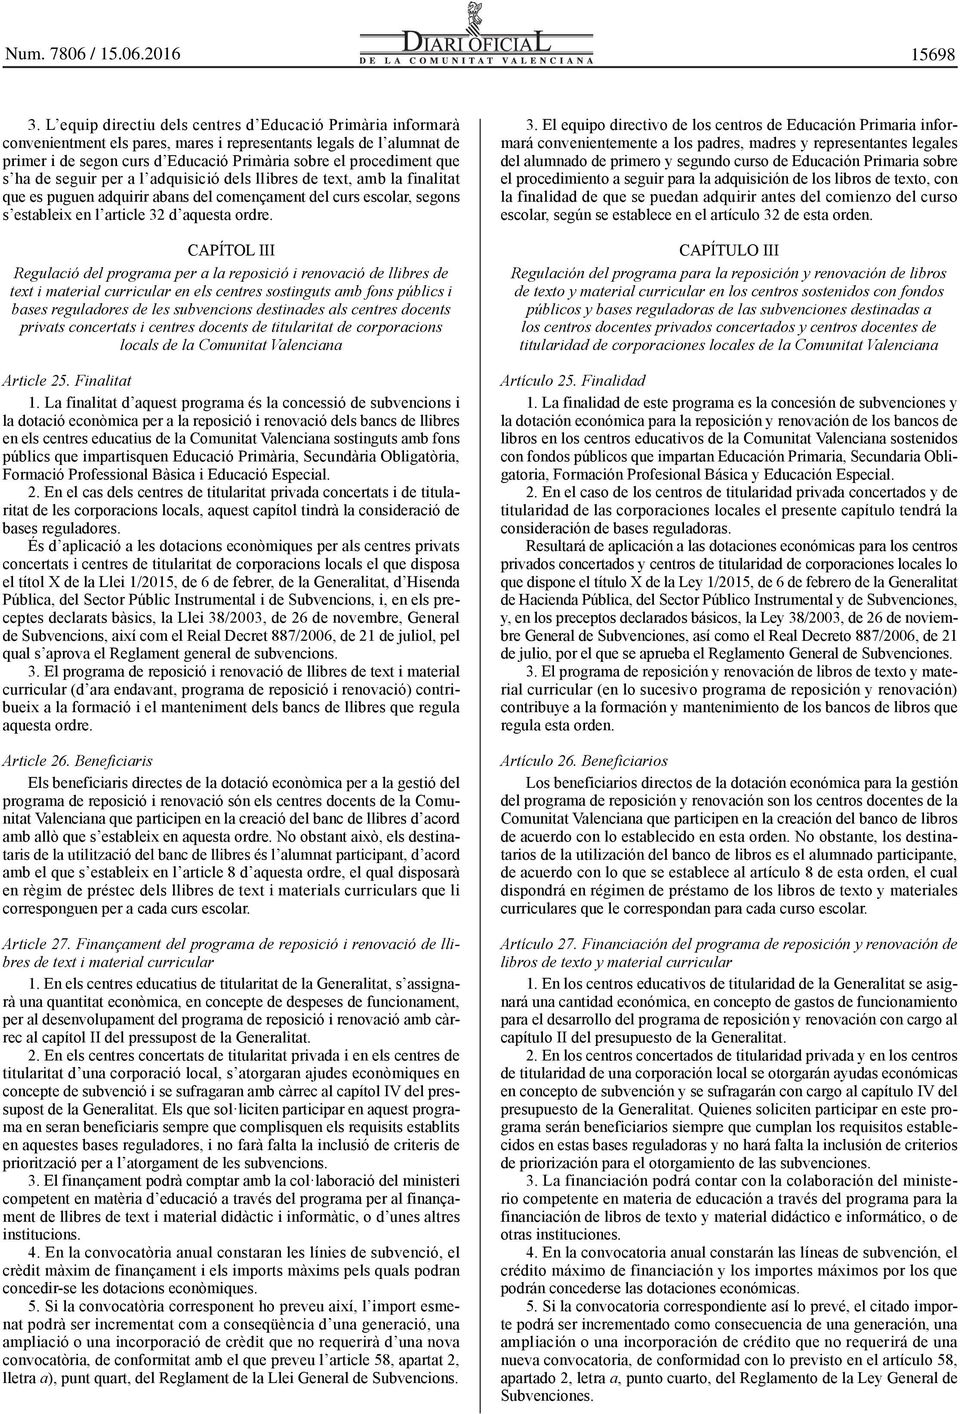 CAPÍTOL III Regulació del programa per a la reposició i renovació de llibres de text i material curricular en els centres sostinguts amb fons públics i bases reguladores de les subvencions destinades